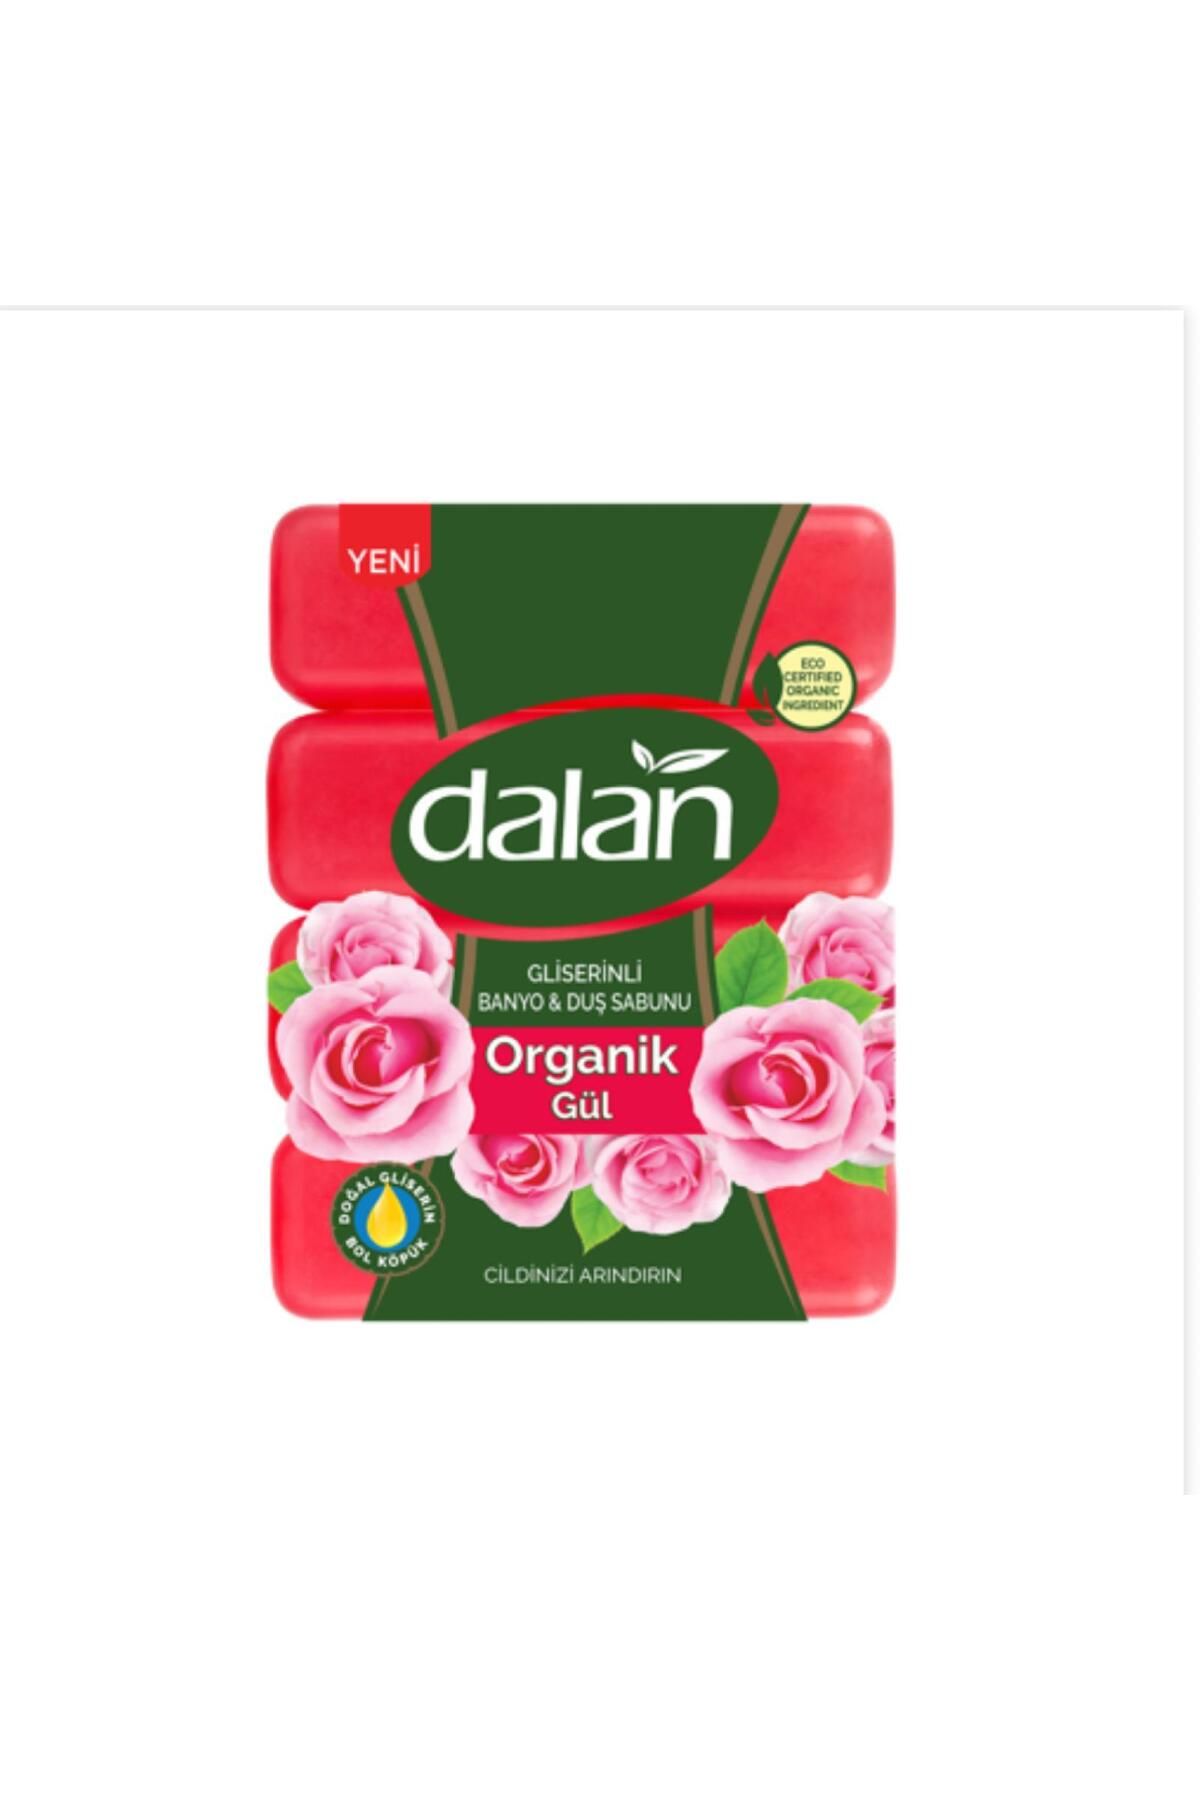 Dalan Gliserinli organik gül sabunu